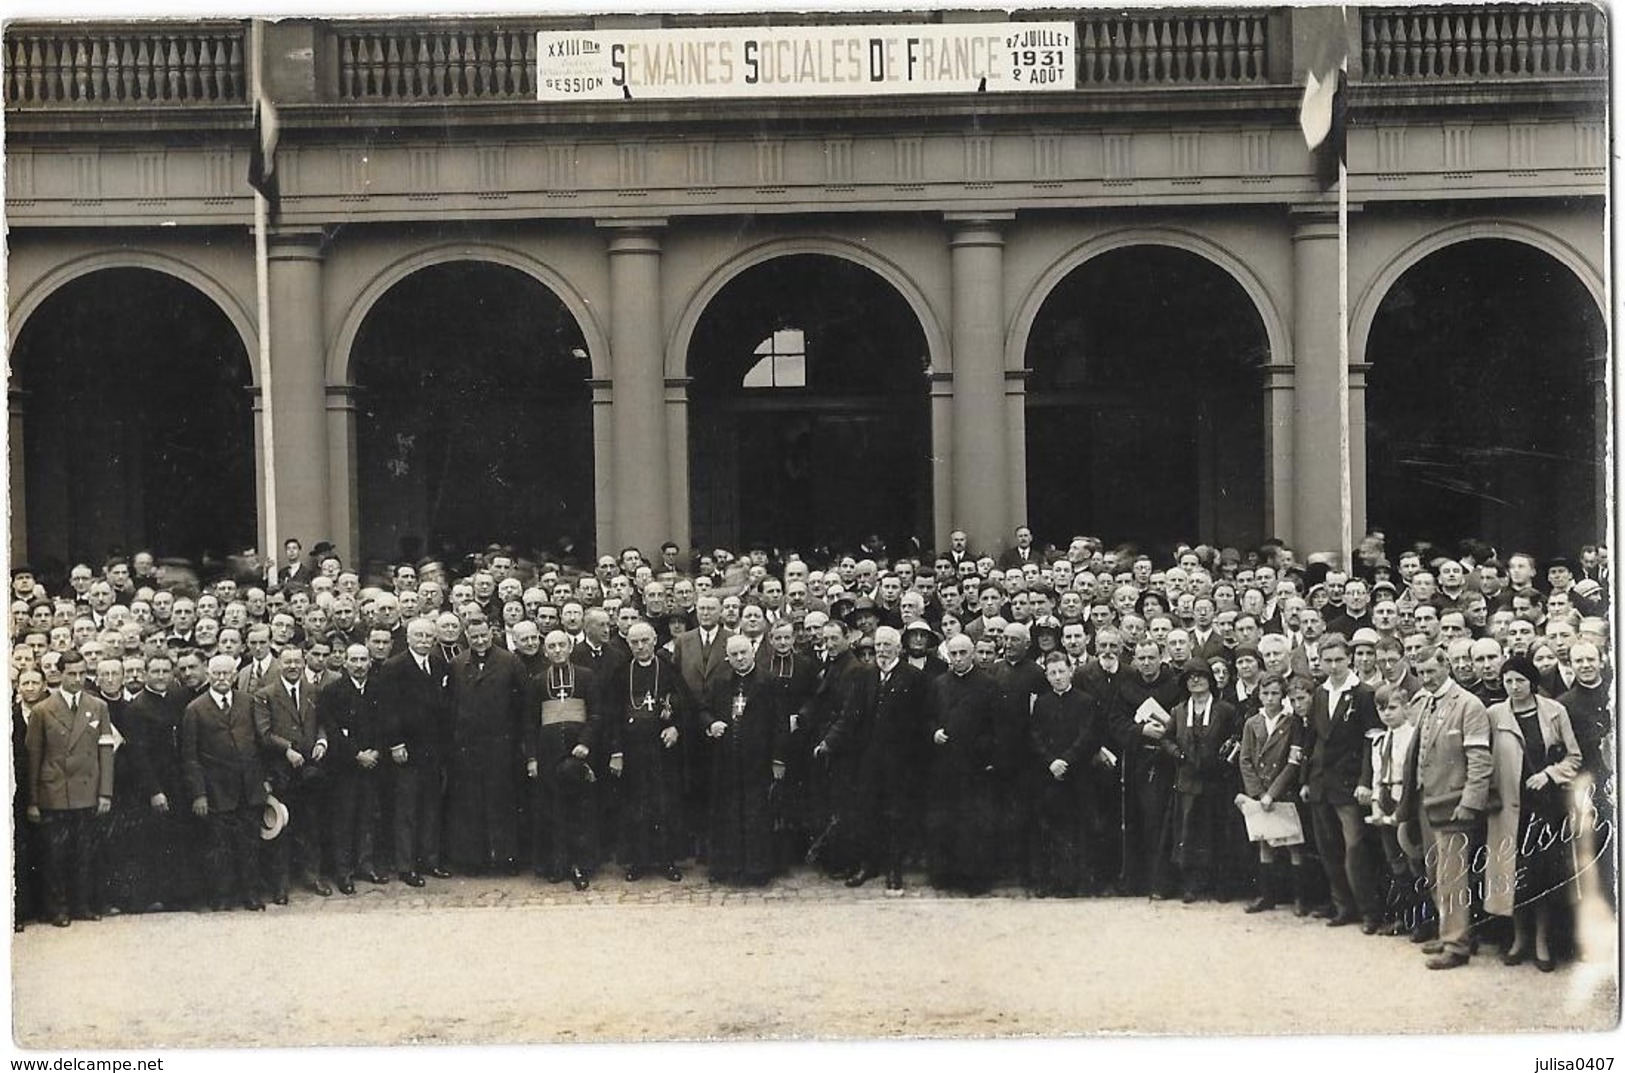 MULHOUSE (68) Carte Photo XXIIIème Session Semaines Sociales De France 1931 Groupe - Mulhouse